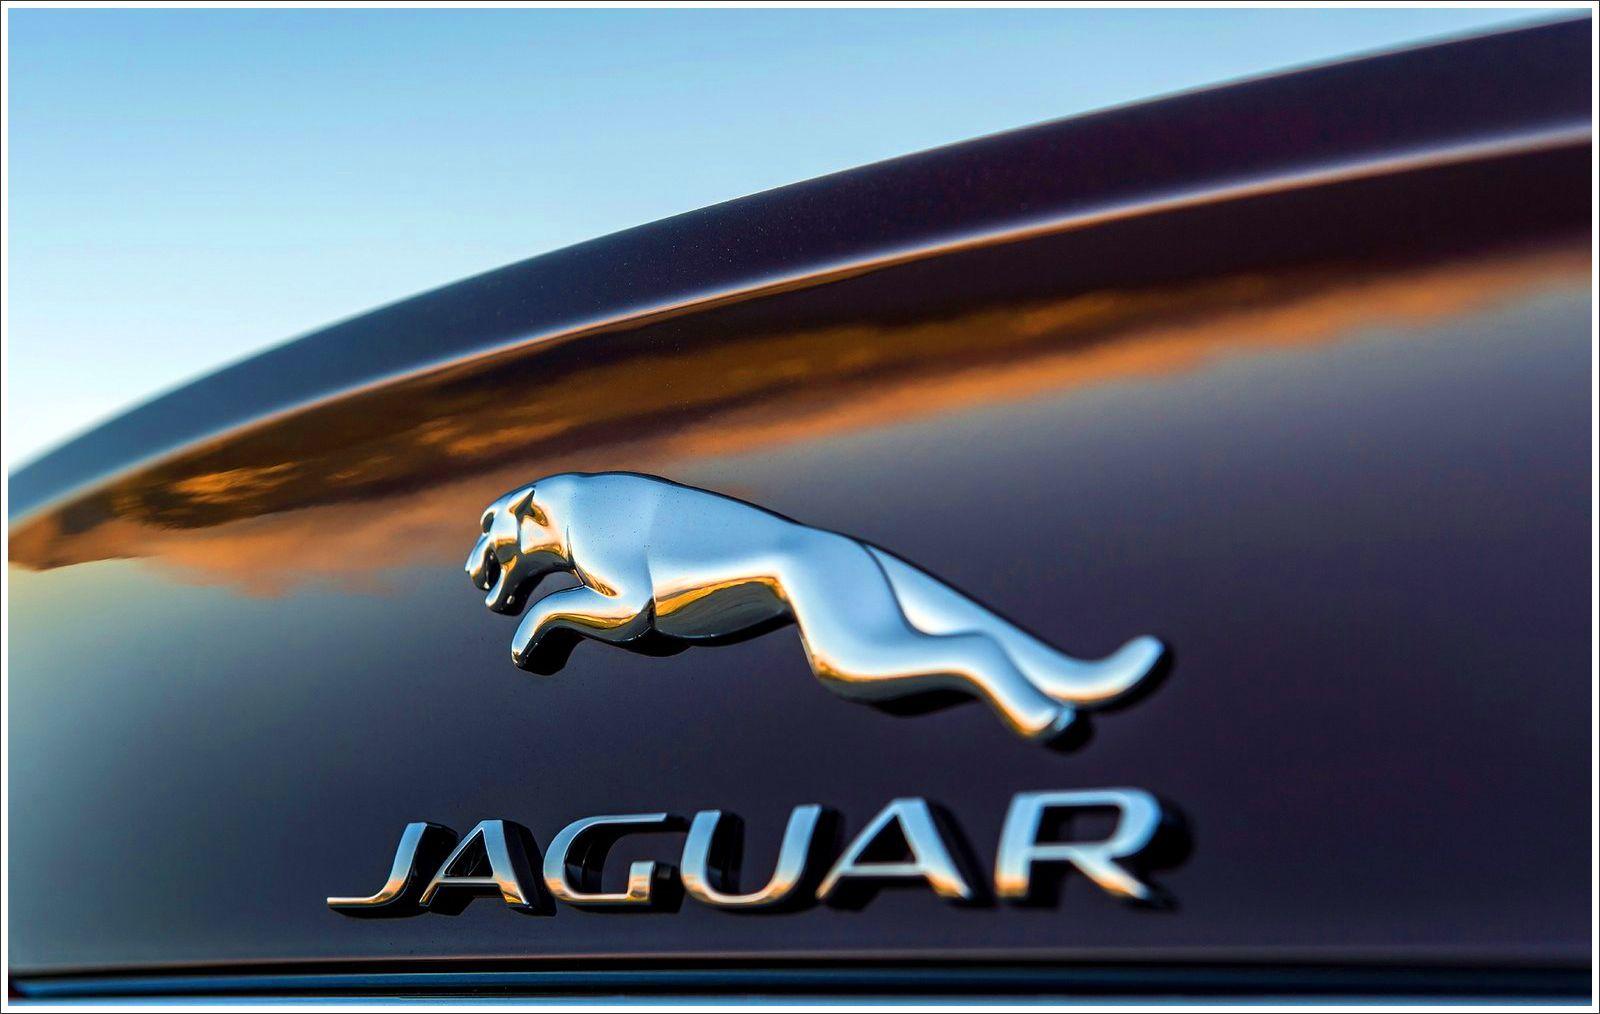 Jaguar Logo - Jaguar Logo Meaning and History, latest models | World Cars Brands